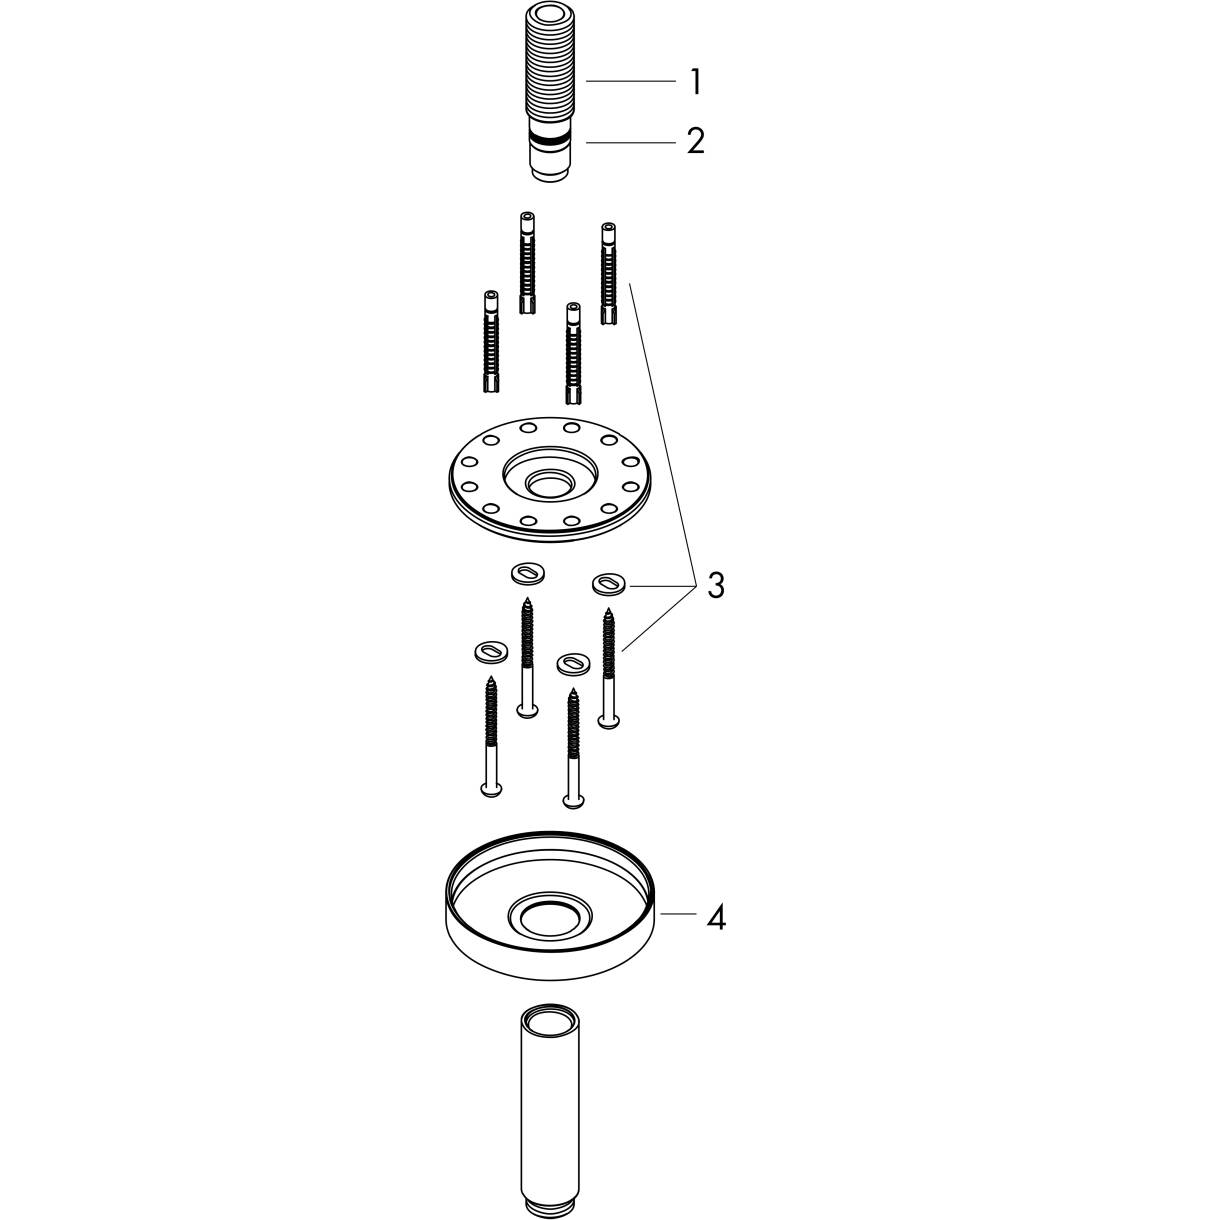 HANSGROHE AXOR ShowerSolutions Tavan bağlantısı 300 mm #26433820 - Mat Nikel resmi